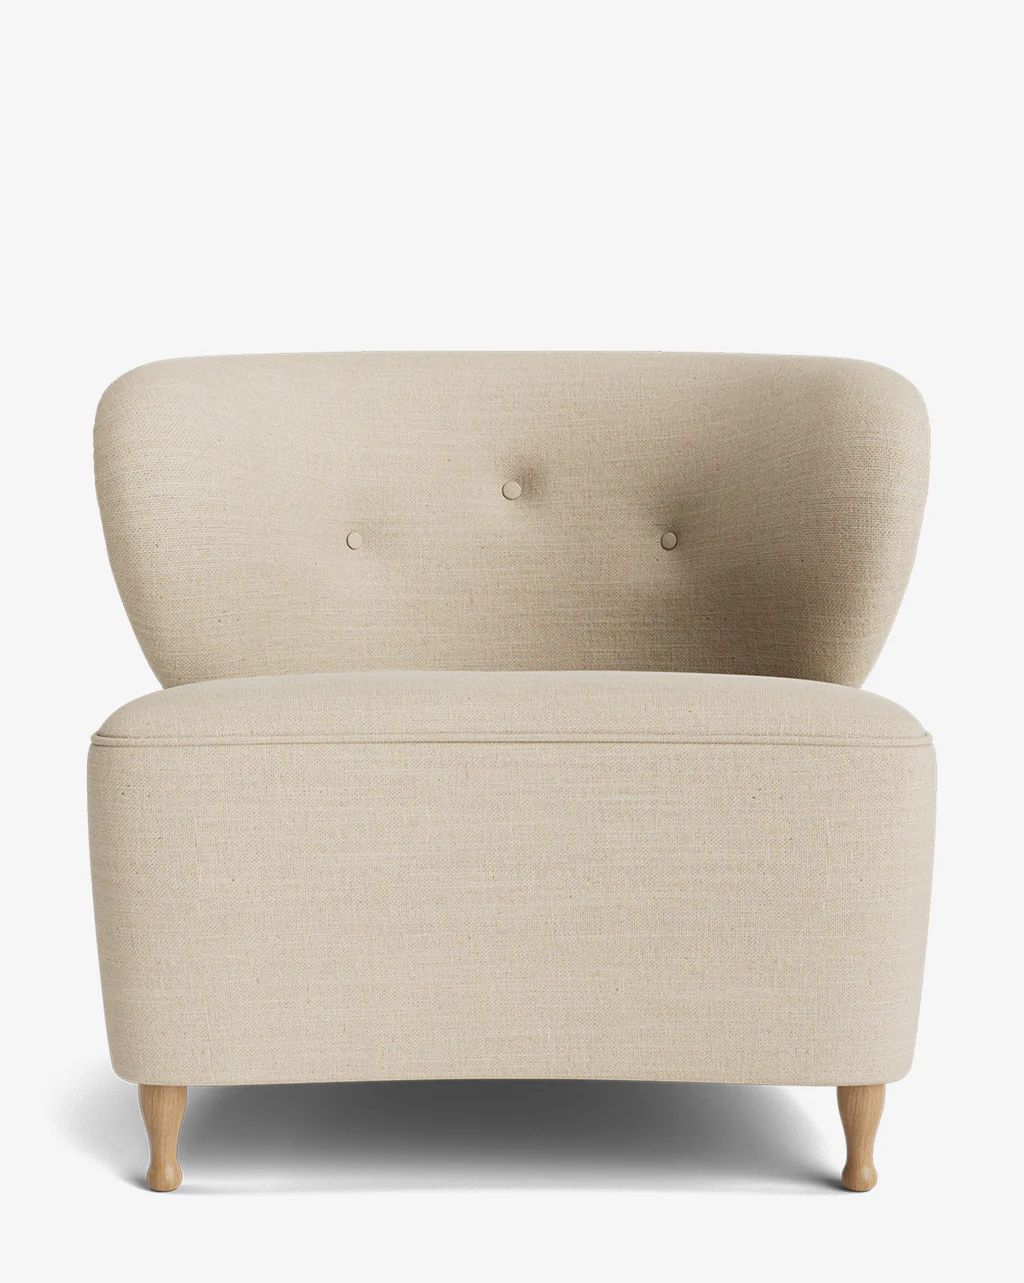 Carmella Slipper Chair | McGee & Co.